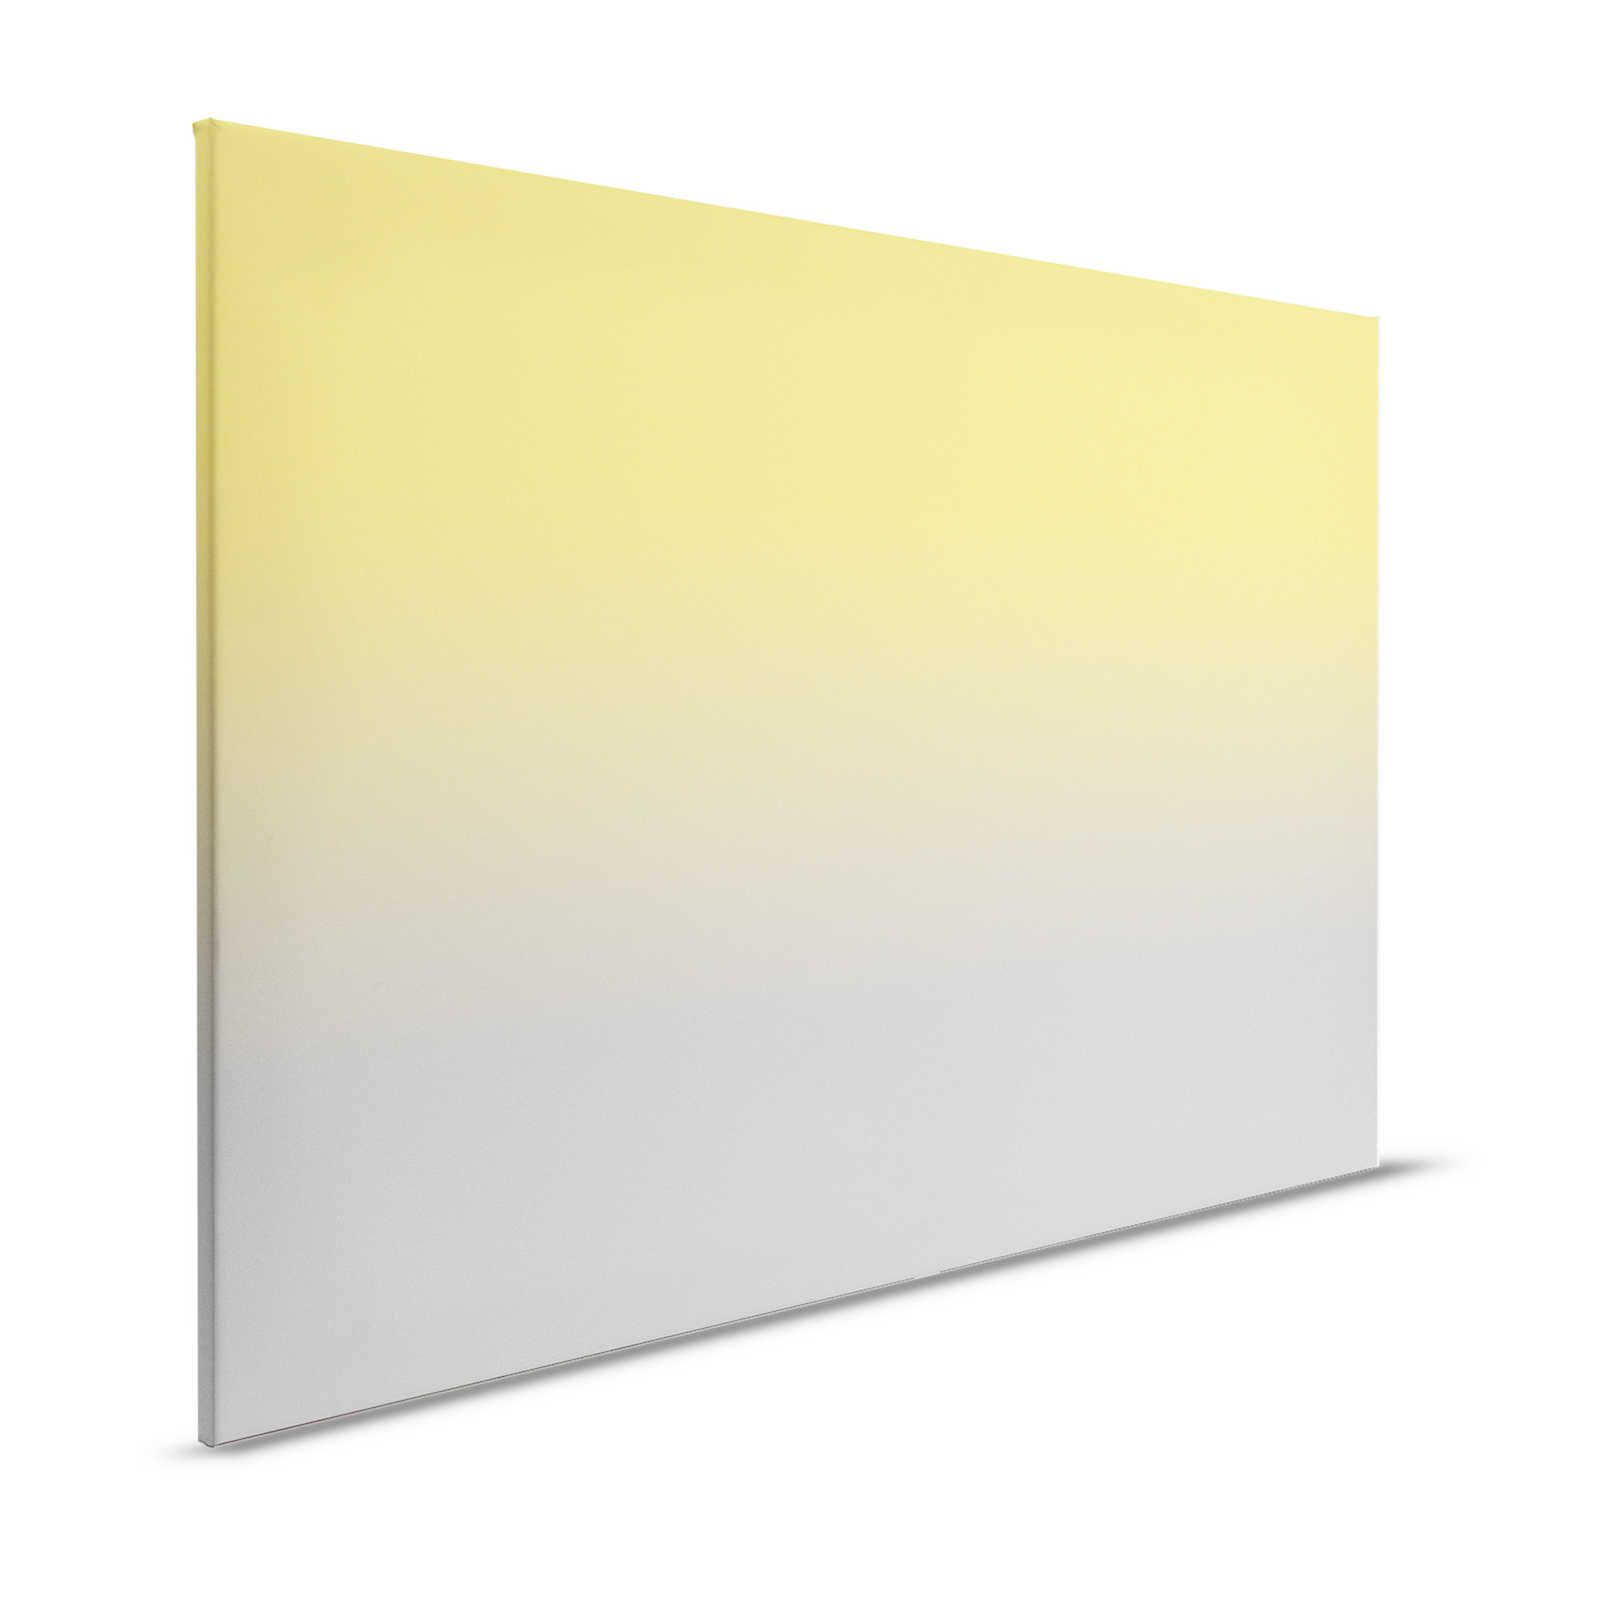 Colour Studio 1 - Pintura en lienzo Colores de moda Amarillo y Gris Efecto Ombre - 1,20 m x 0,80 m
